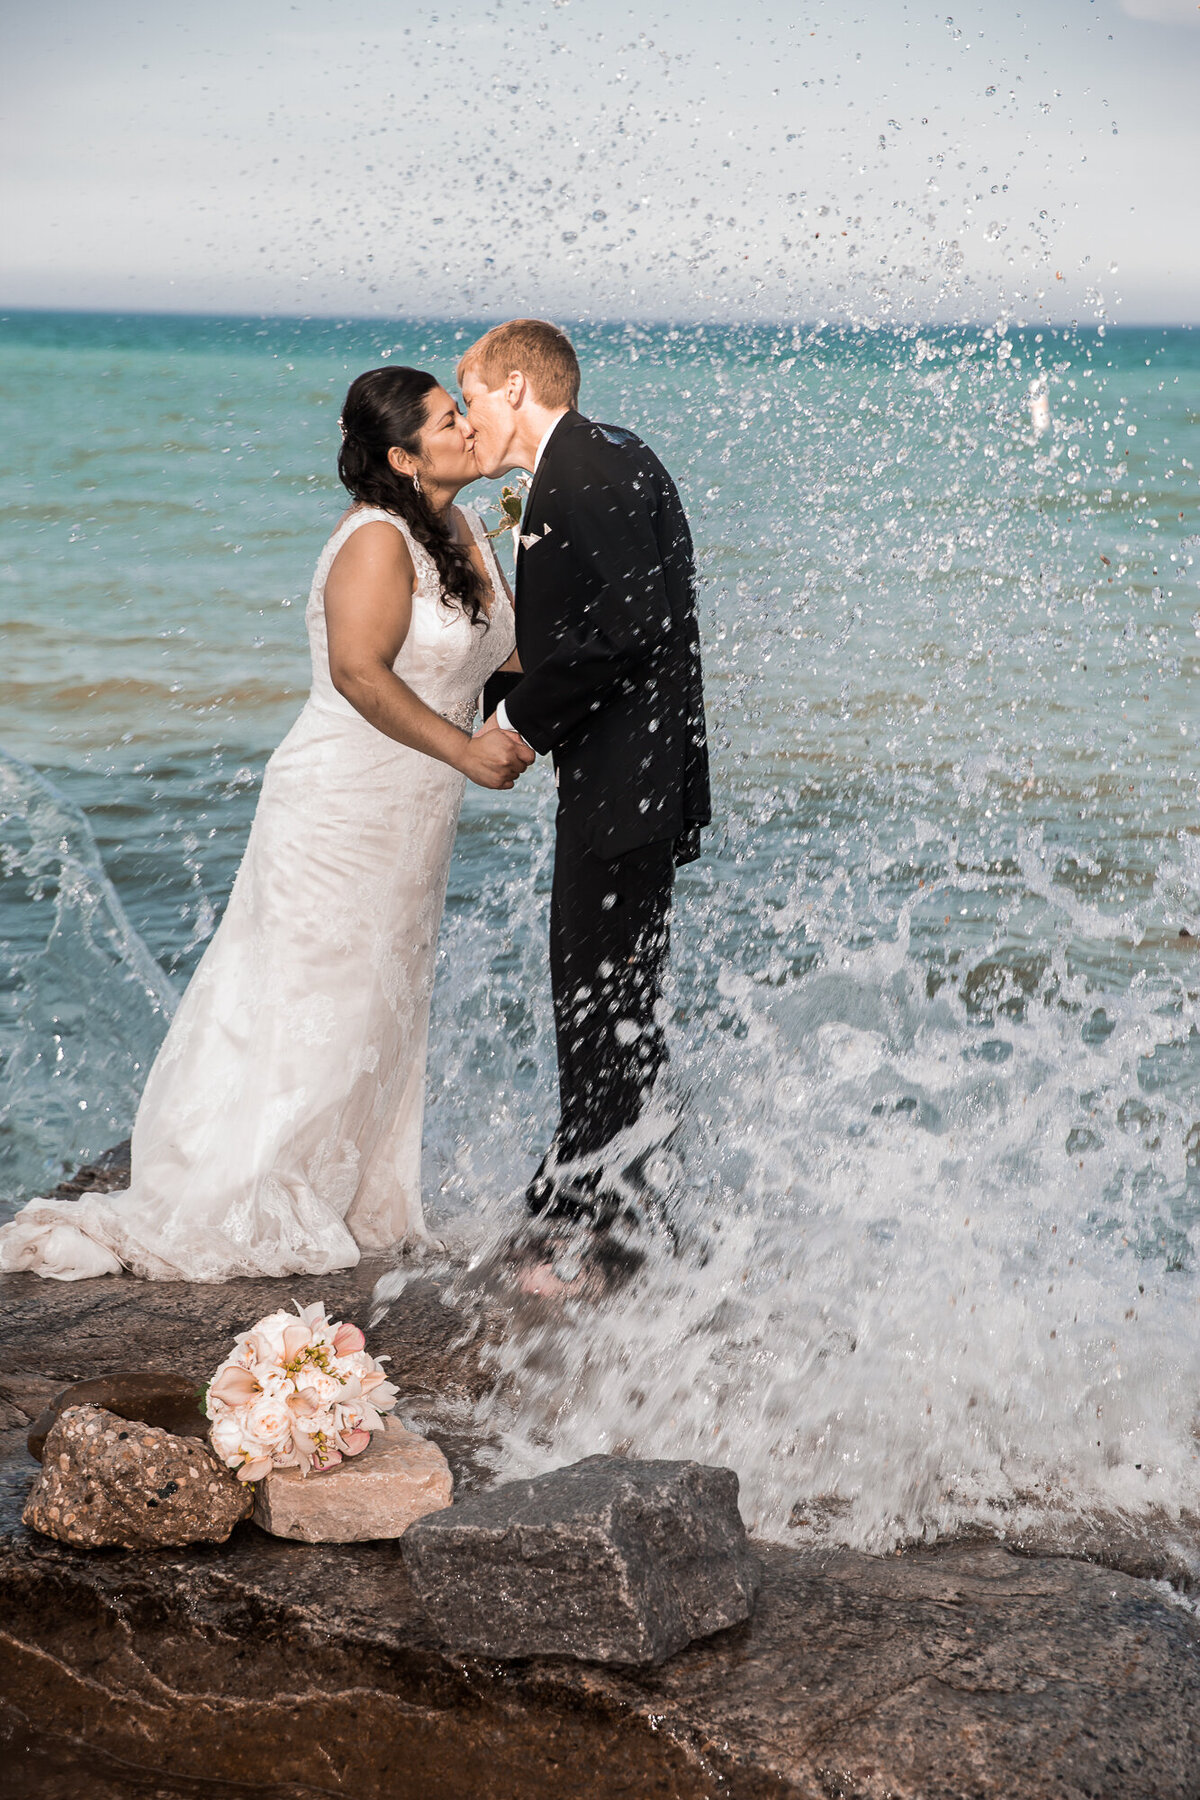 A beach wedding portrait taken on the rocks at a Lake Michigan